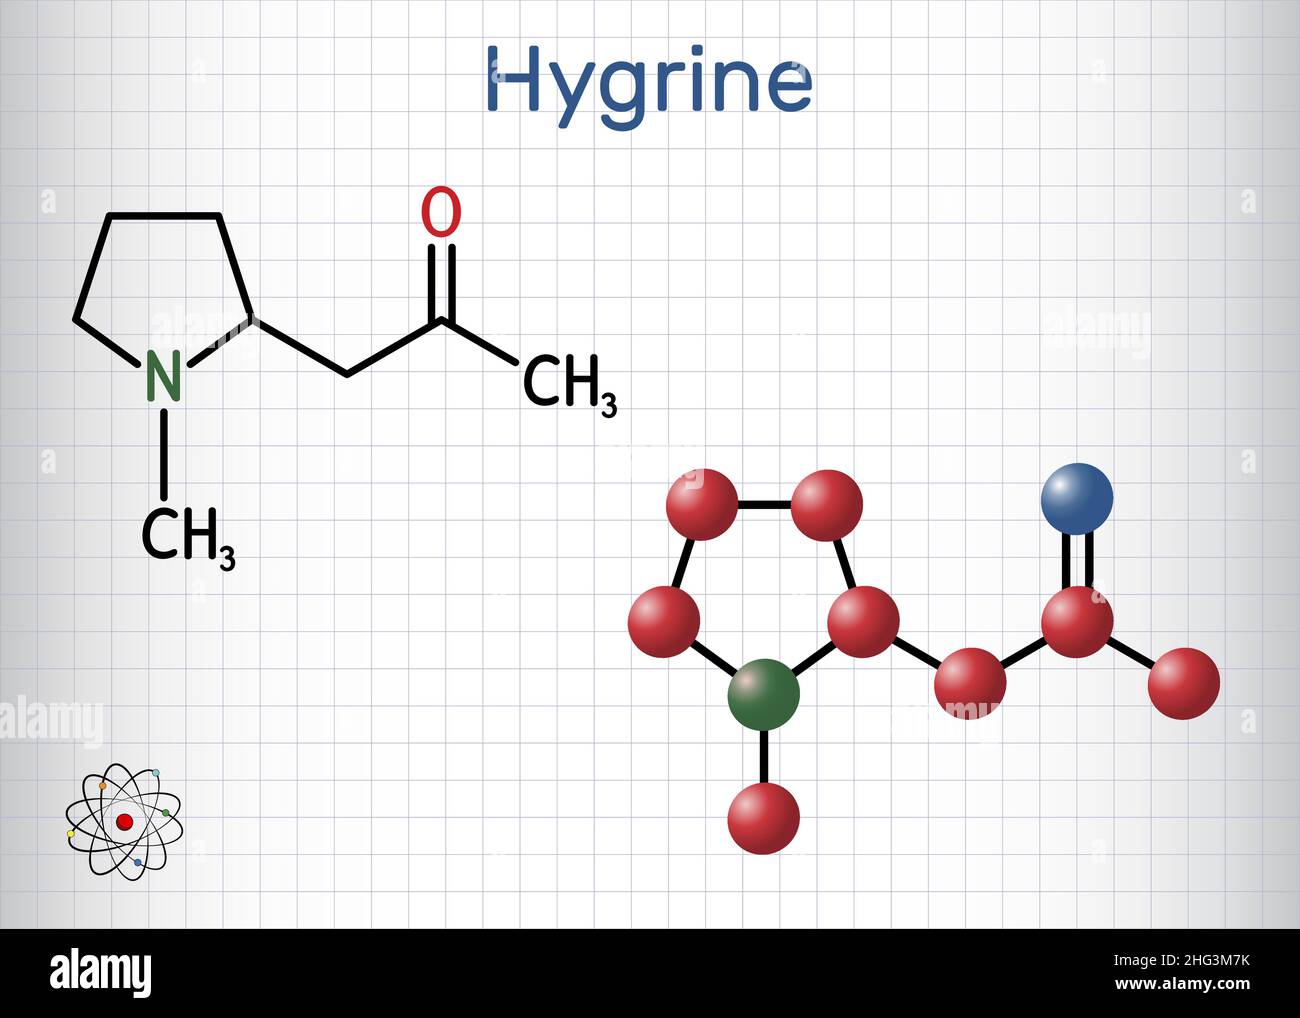 Hygrine-Pyrrolidin-Alkaloidmolekül. Es ist in der Koka-Pflanze gefunden. Strukturelle chemische Formel und Molekülmodell. Blatt Papier in einem Käfig. Vektor Stock Vektor